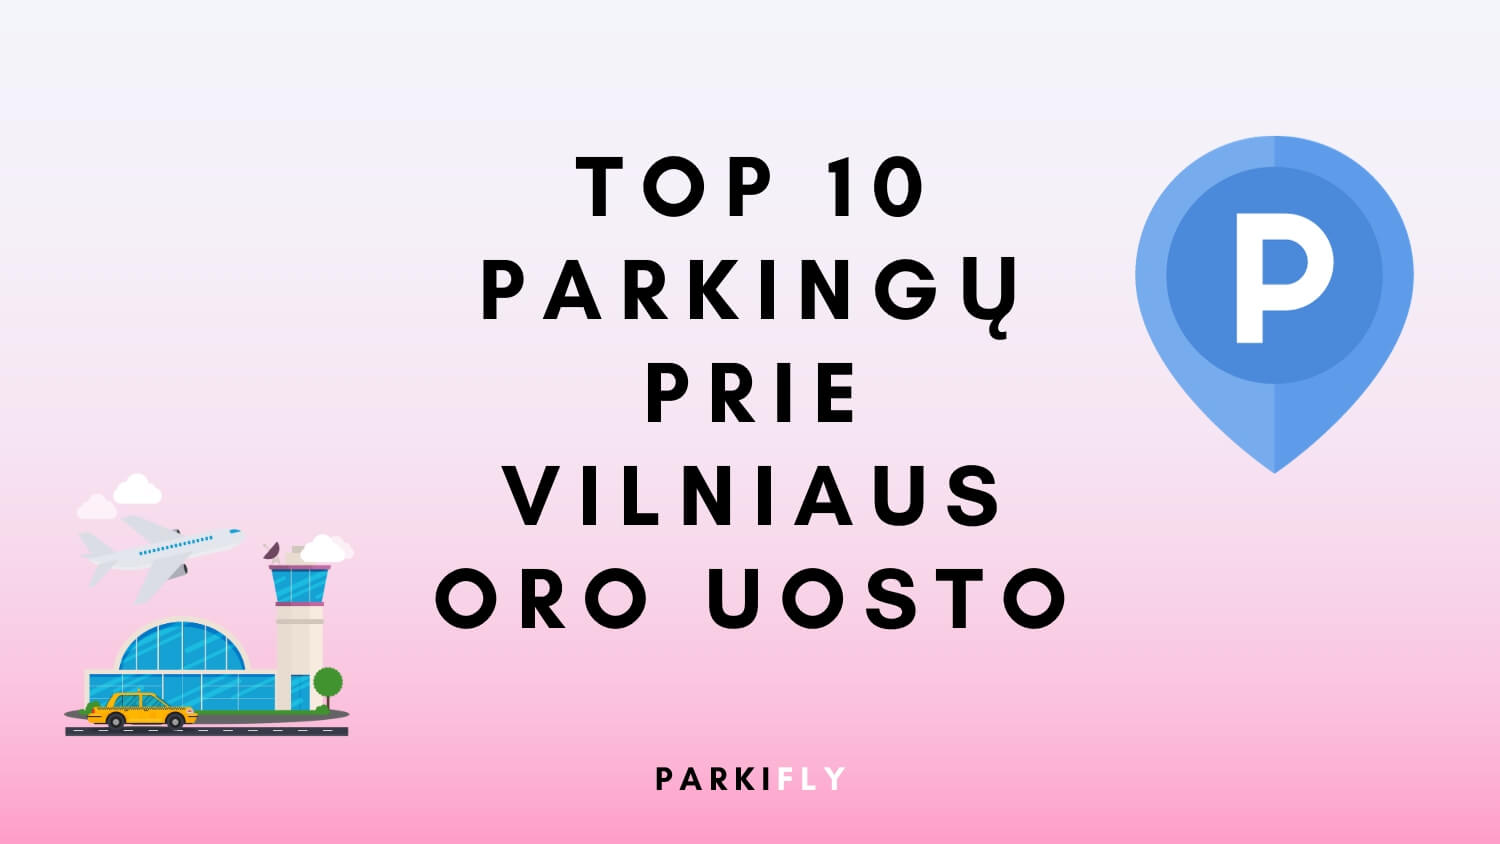 Pigus parkavimas Vilniaus oro uoste (Top 10 geriausių parkingų)